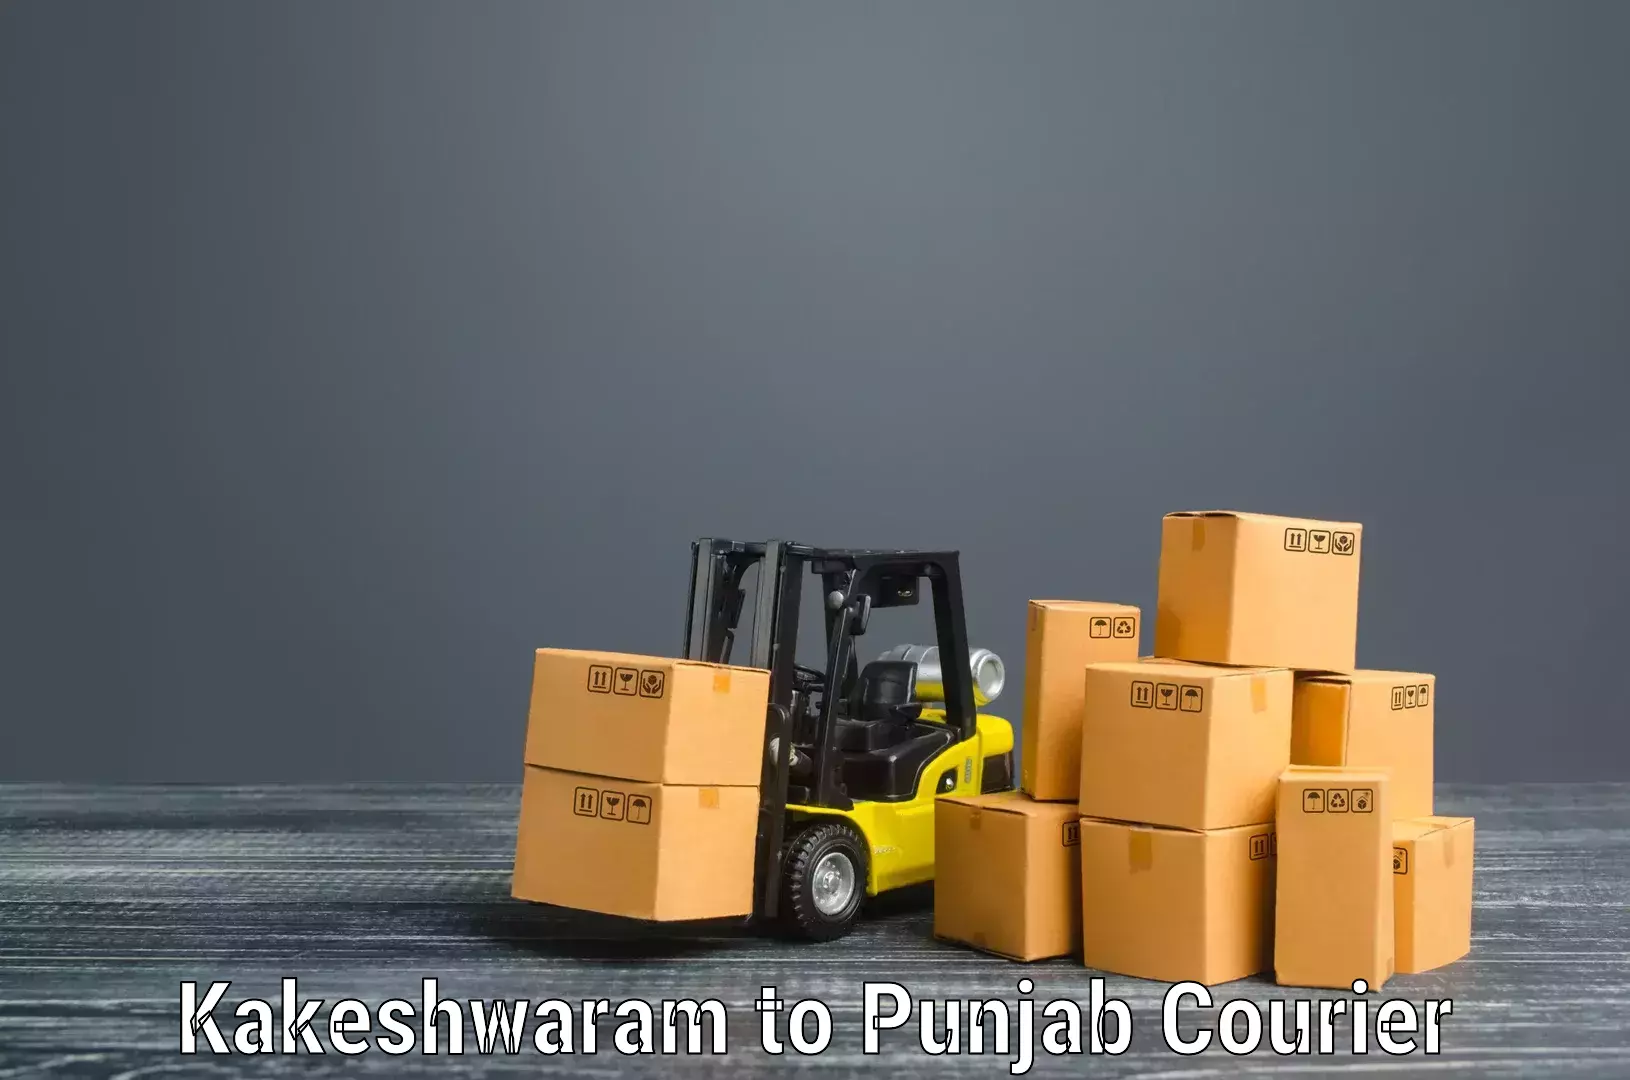 Furniture moving experts Kakeshwaram to Goindwal Sahib